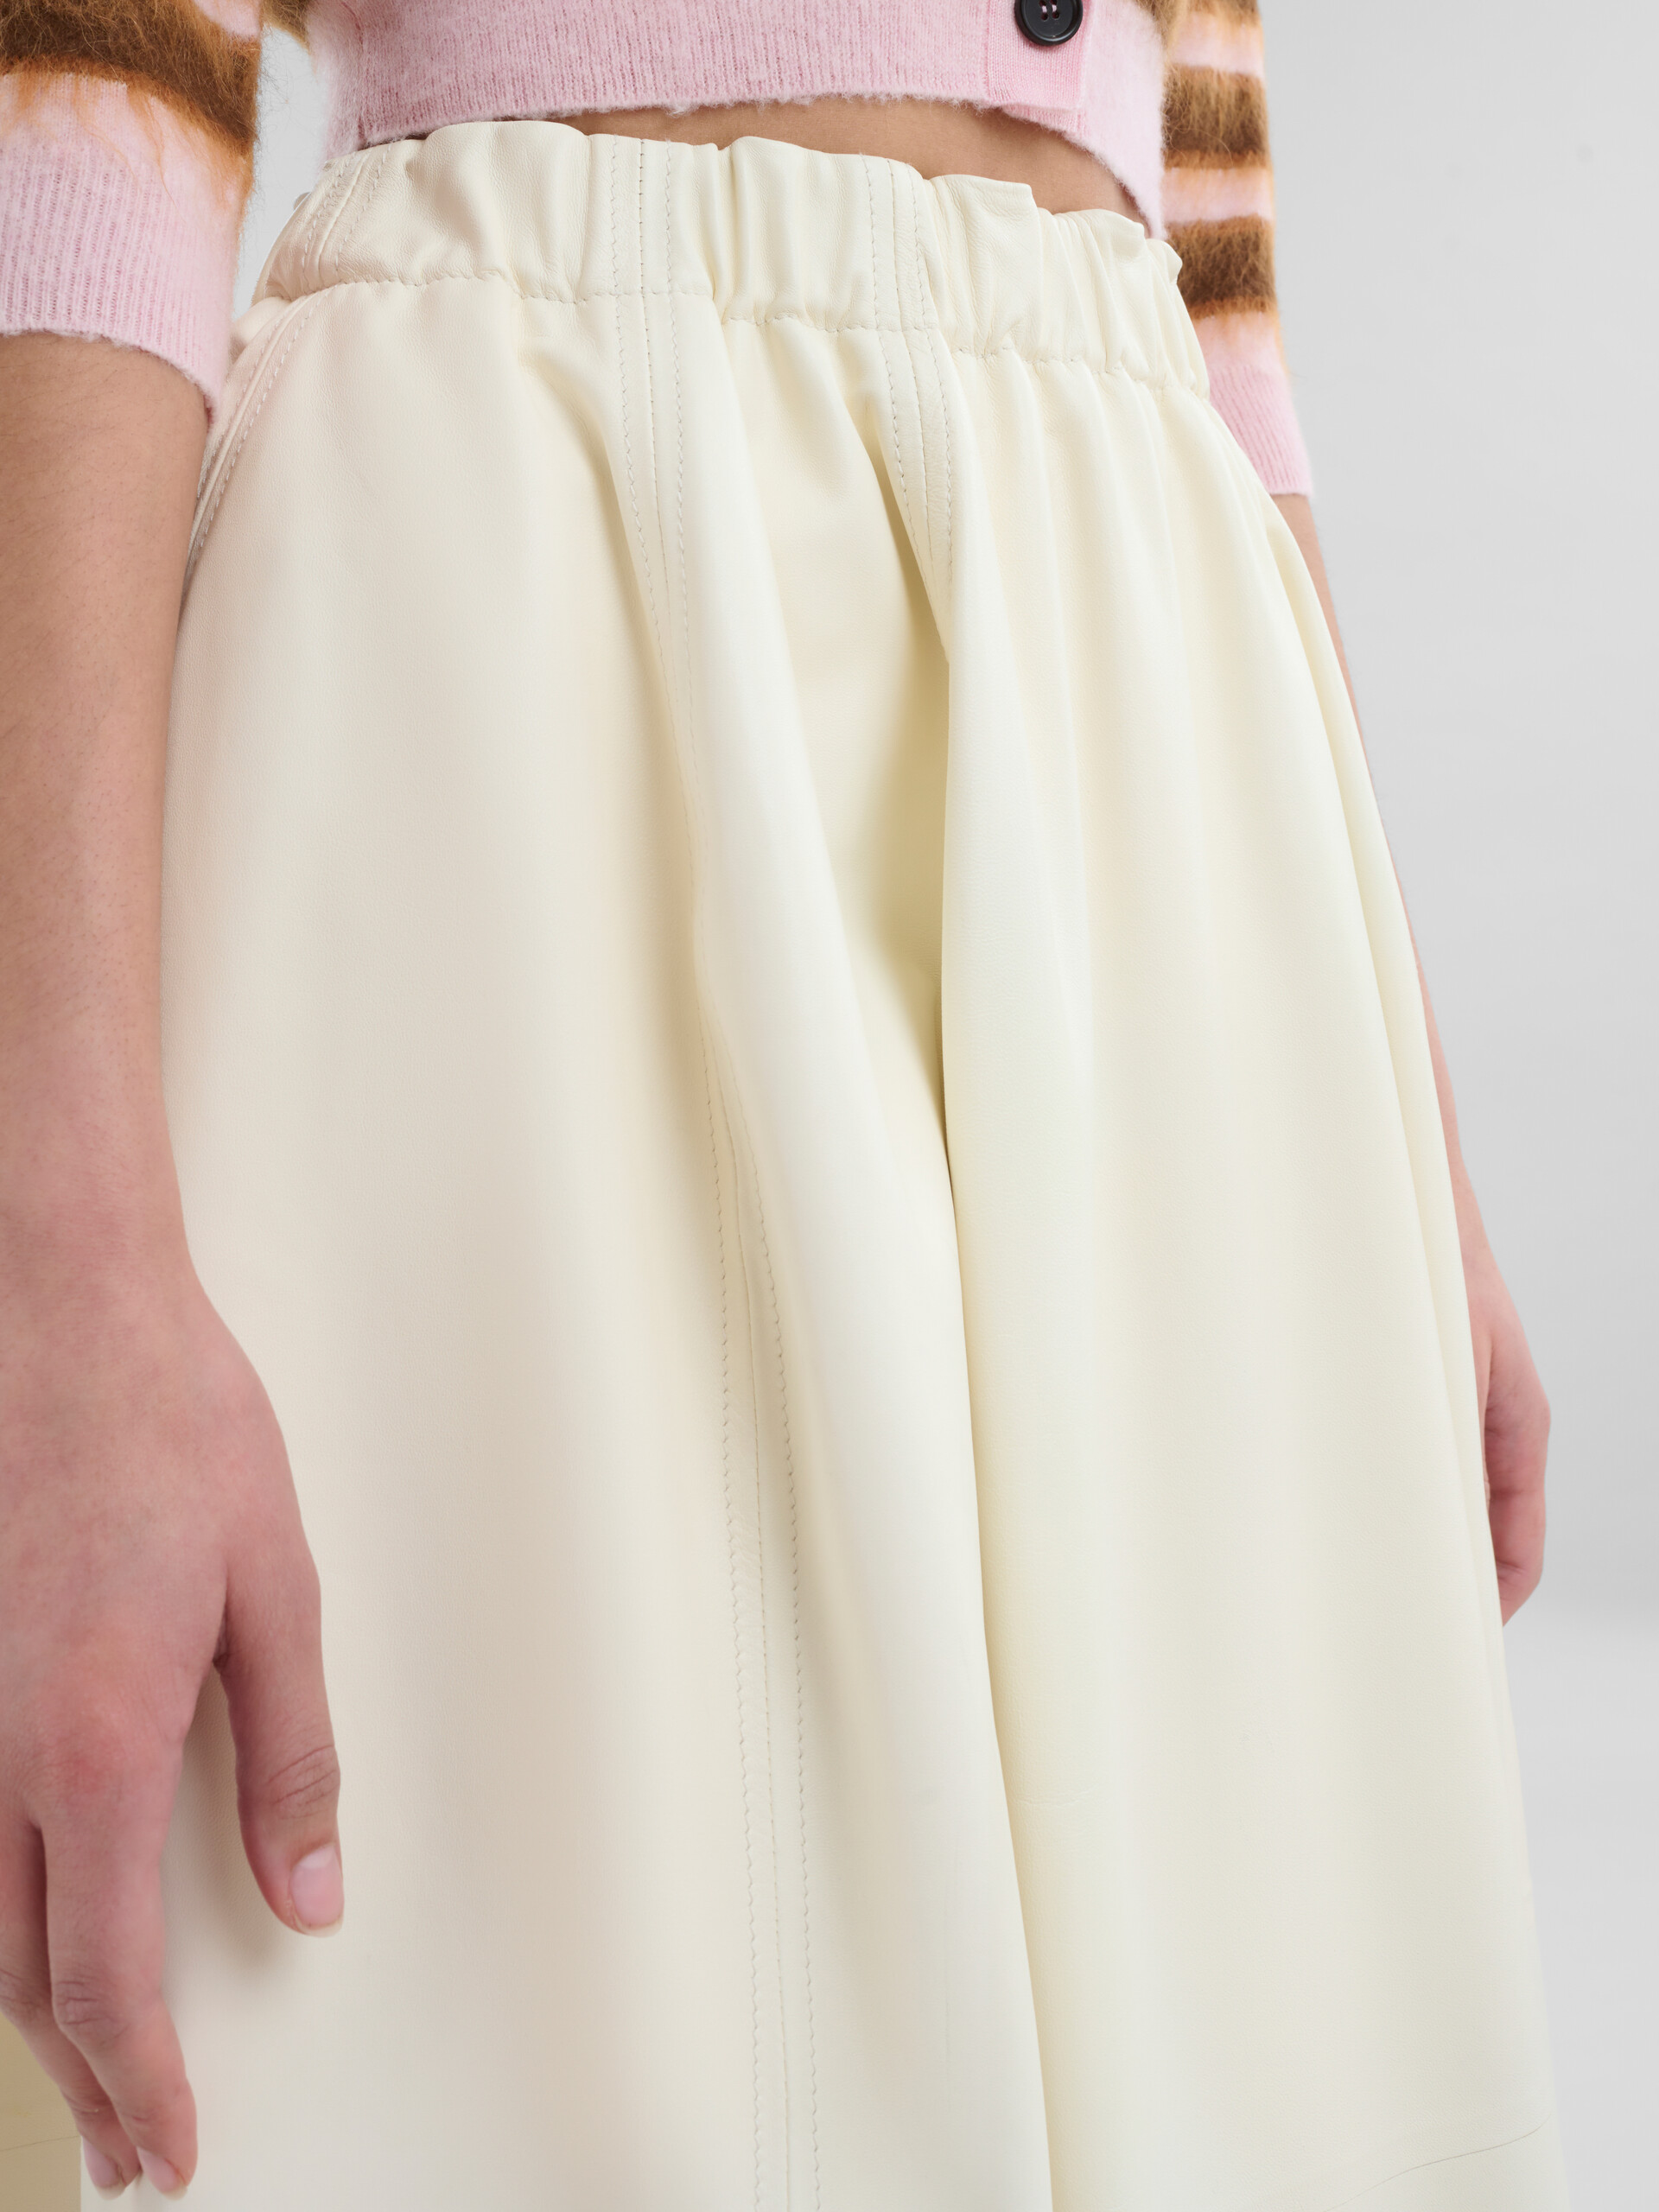 Falda midi elástica color crema de piel de napa - Faldas - Image 4